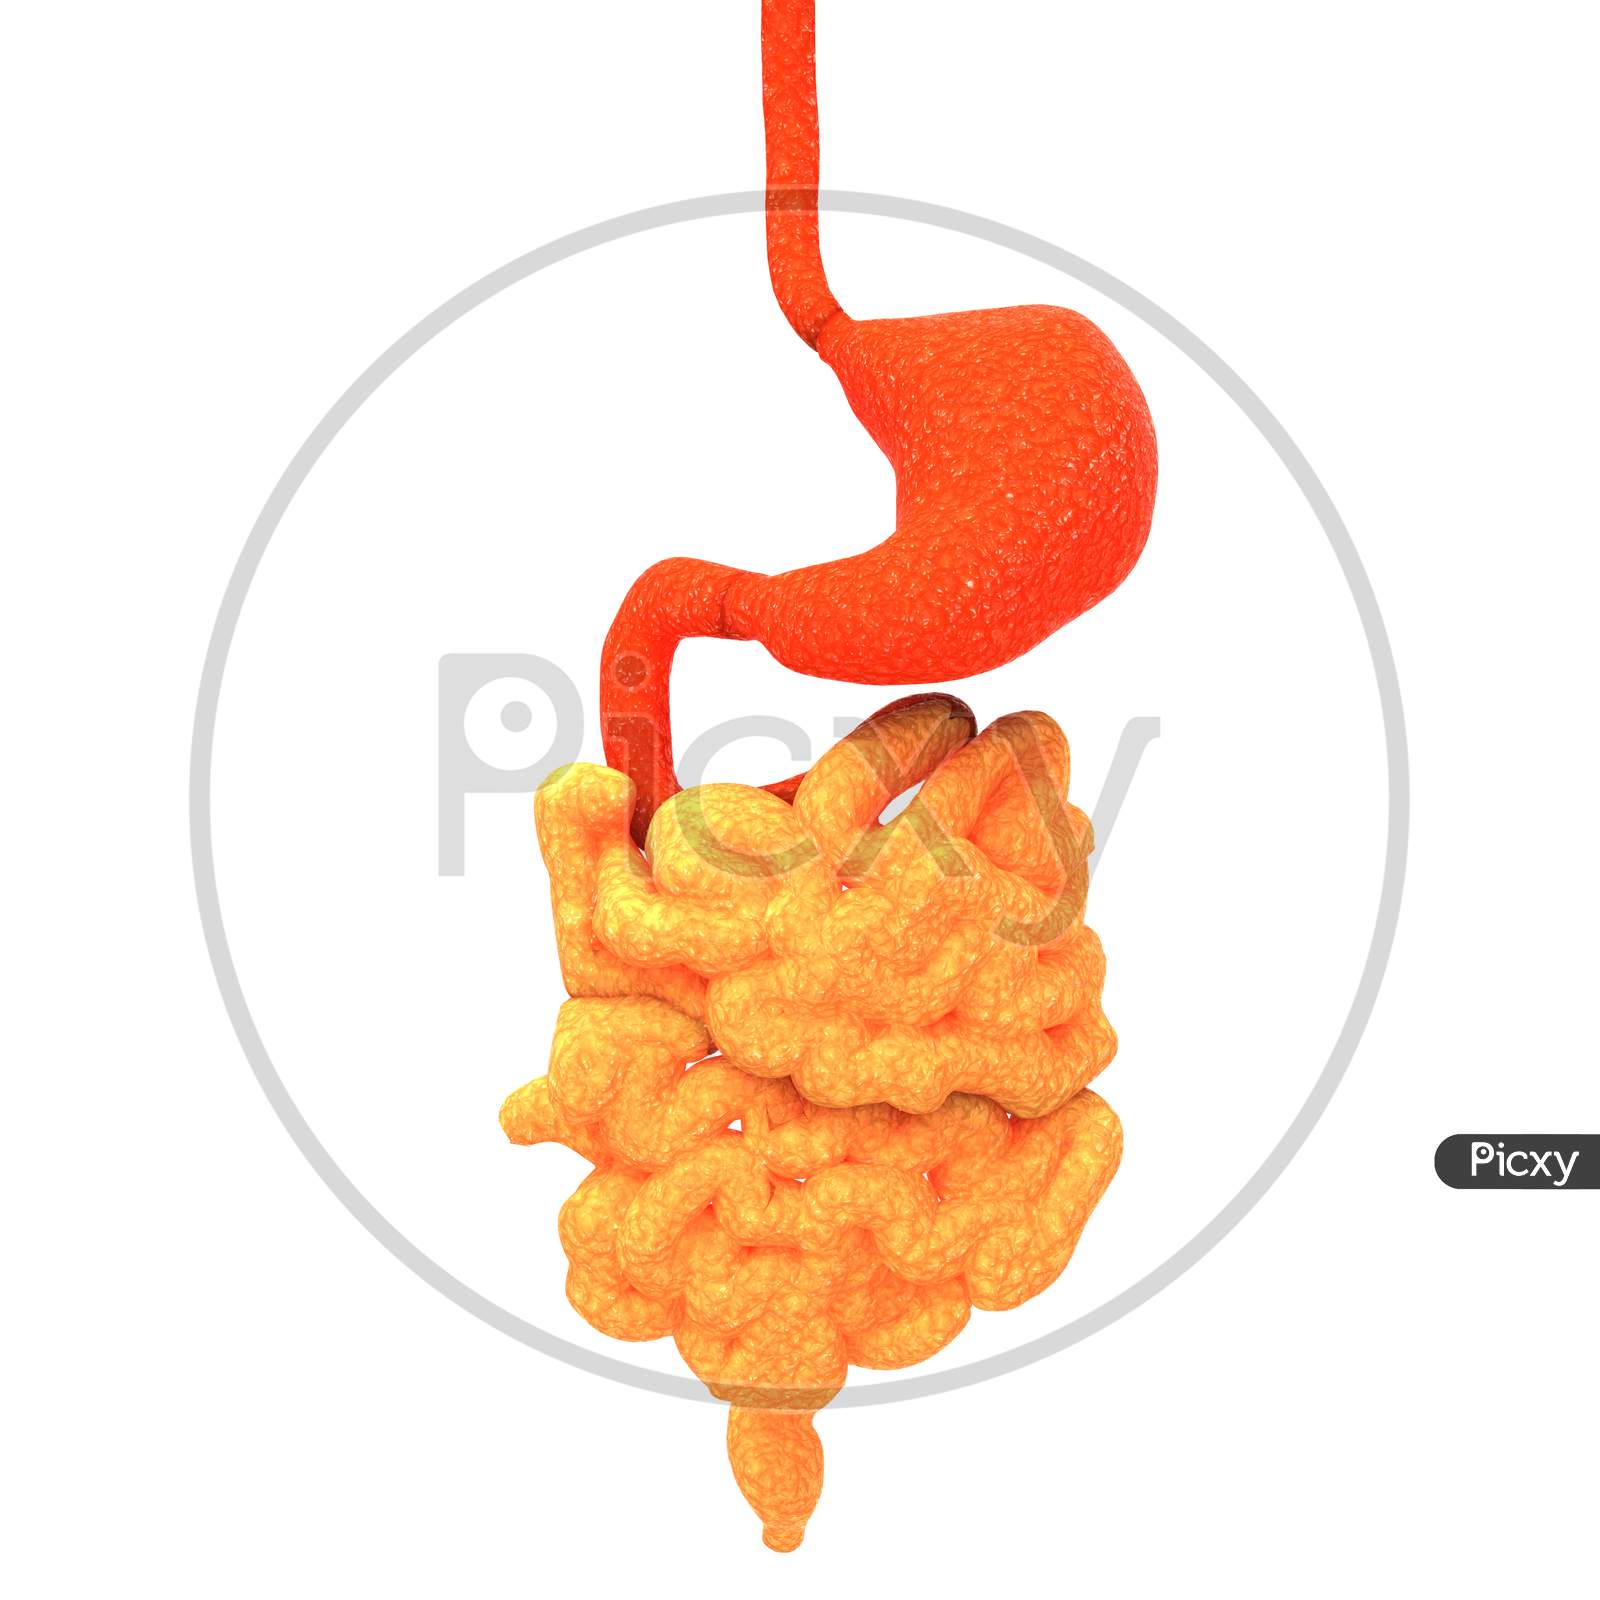 Human Digestive System Stomach with Intestine Anatomy